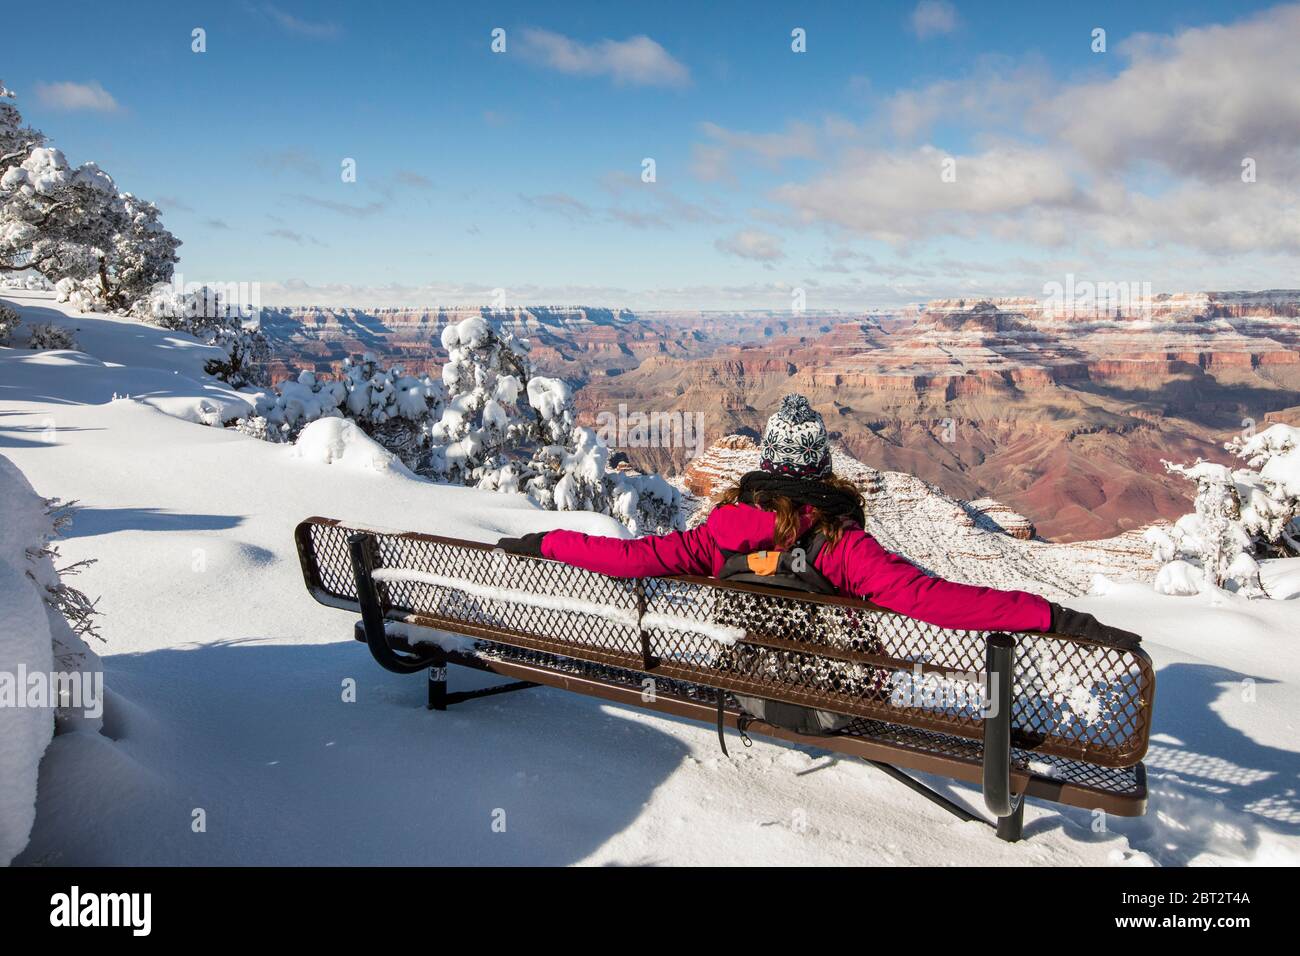 Femme assise sur un banc et regardant la vue, parc national du Grand Canyon, Arizona, États-Unis Banque D'Images